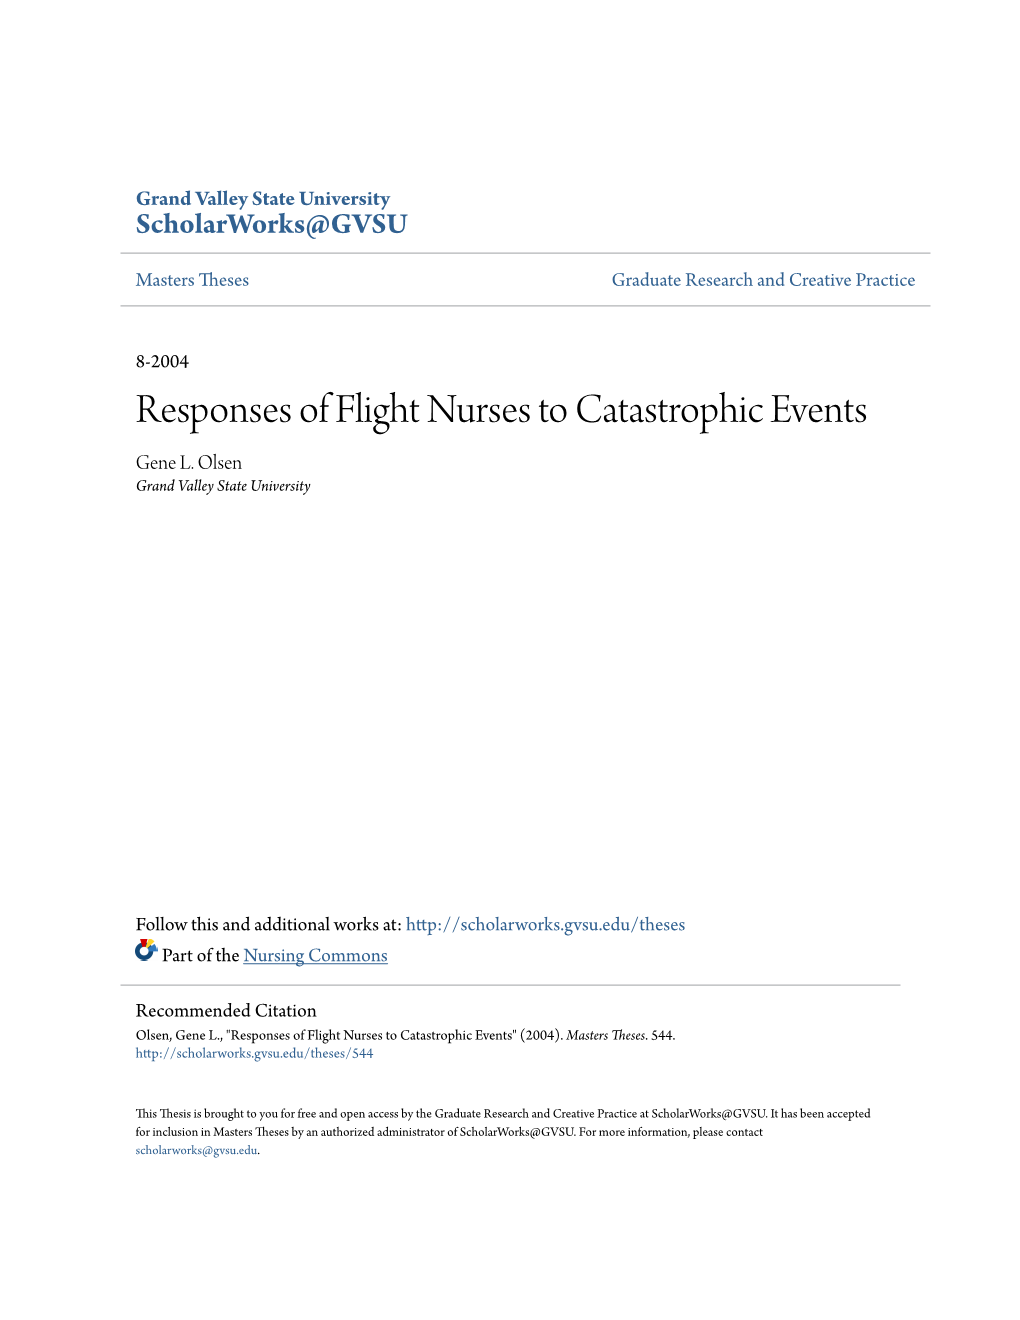 Responses of Flight Nurses to Catastrophic Events Gene L